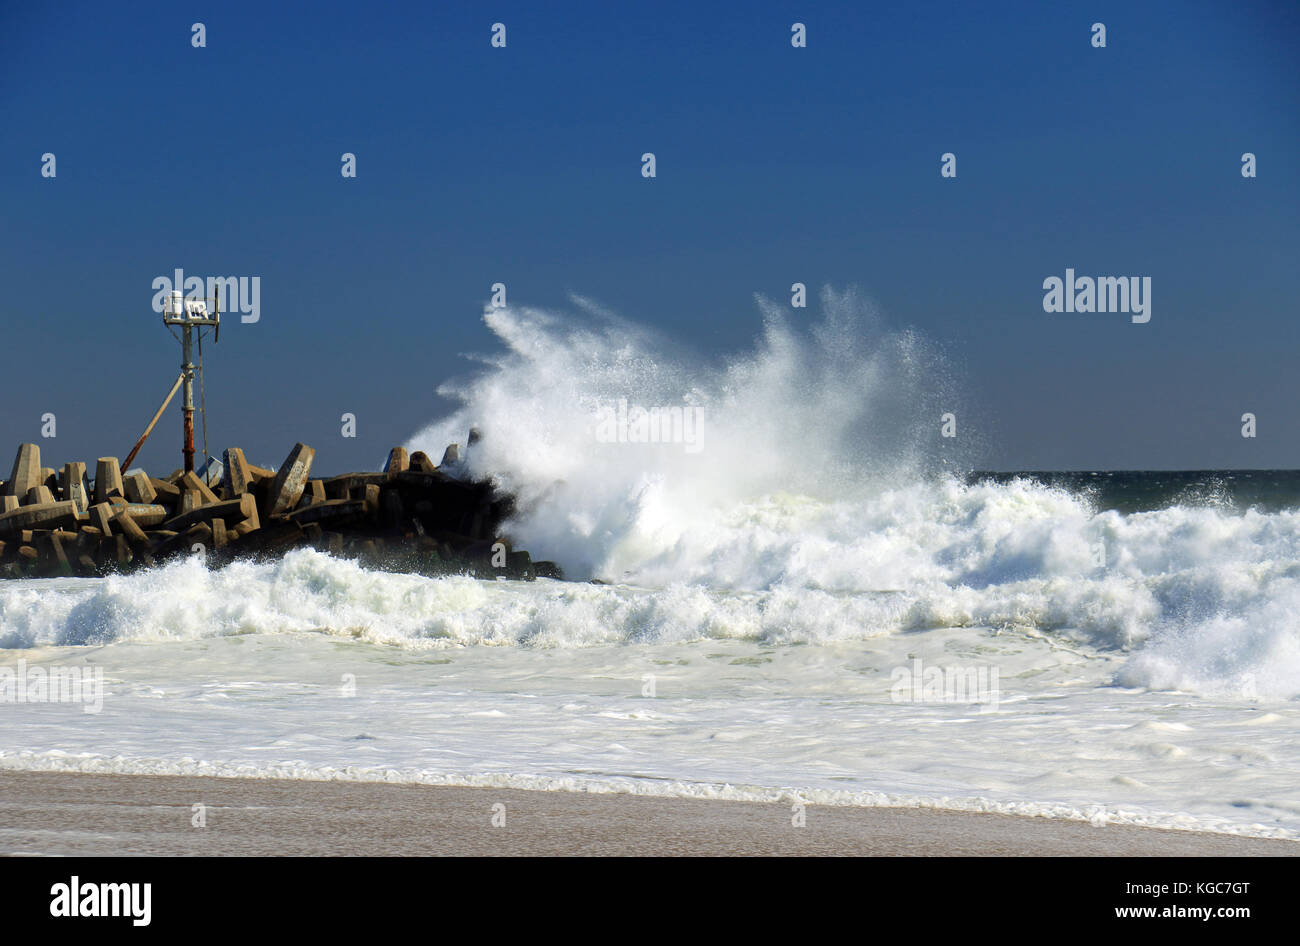 Grandi onde infrangersi contro questo molo con il suo faro di navigazione la mattina dopo una forte tempesta si muove lungo la costa est del new jersey Foto Stock